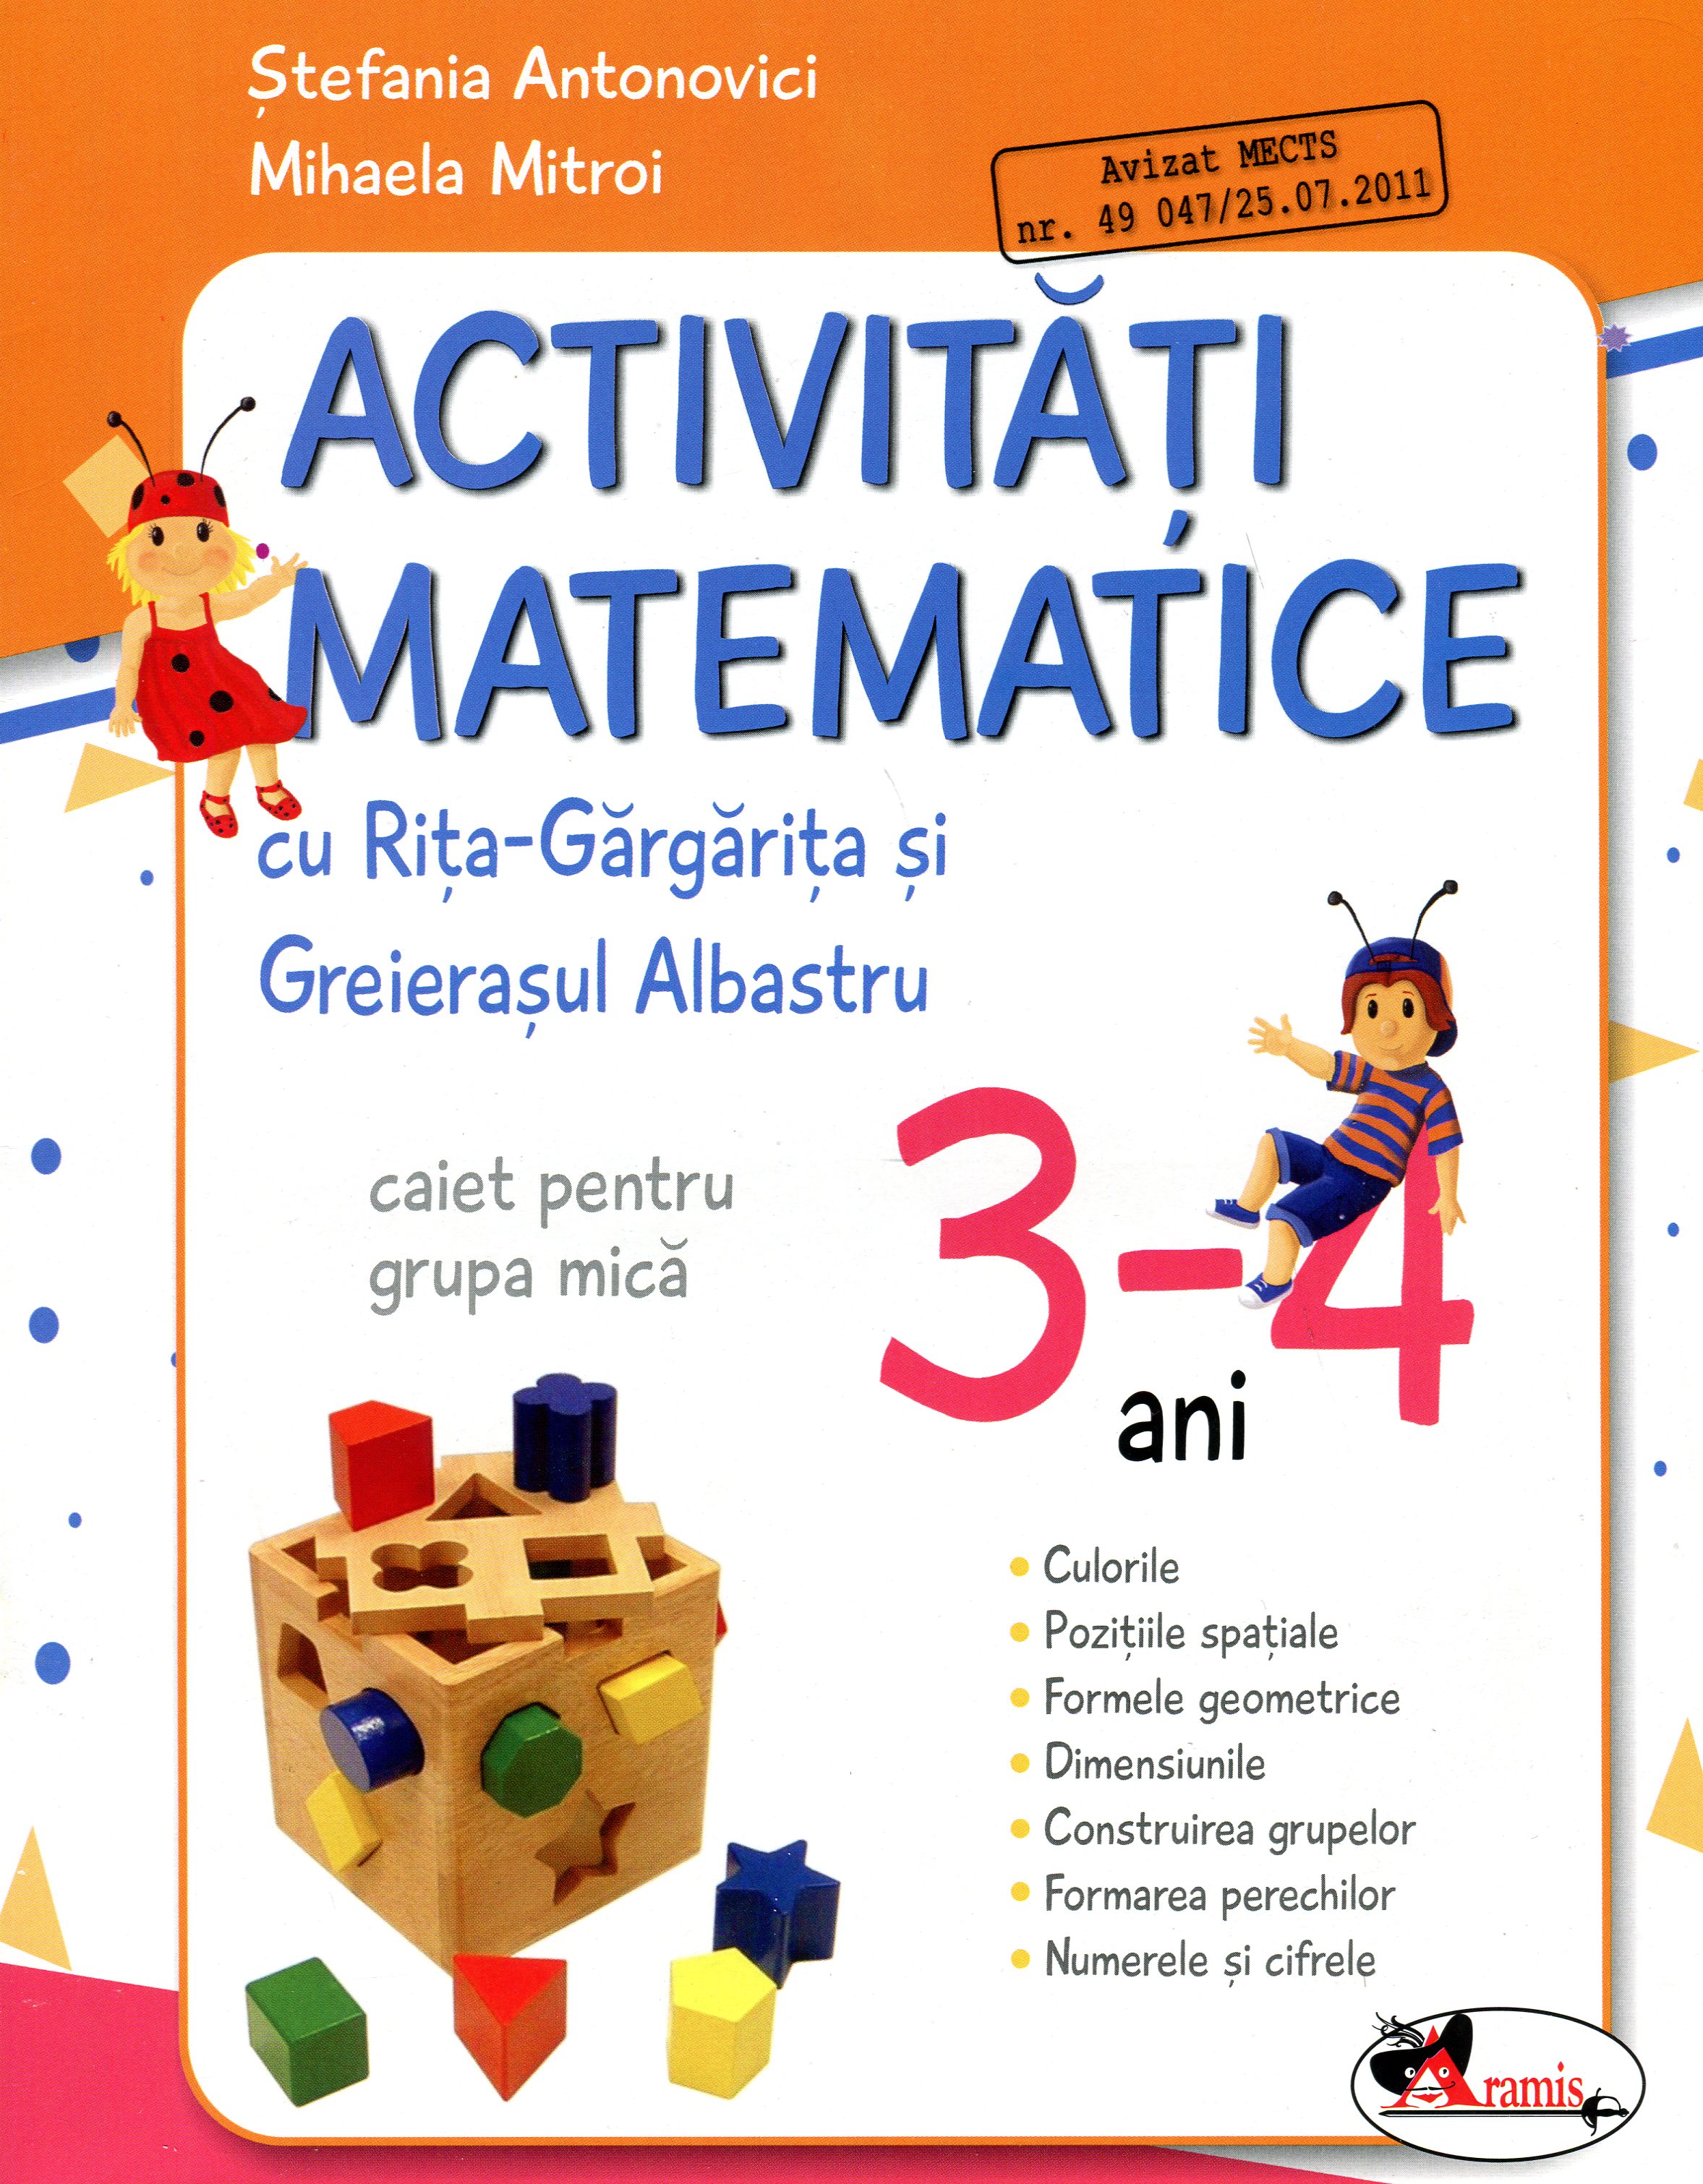 Activitati matematice. Caiet pentru grupa mica, 3-4 ani - Stefania Antonovici, Mihaela Mitroi